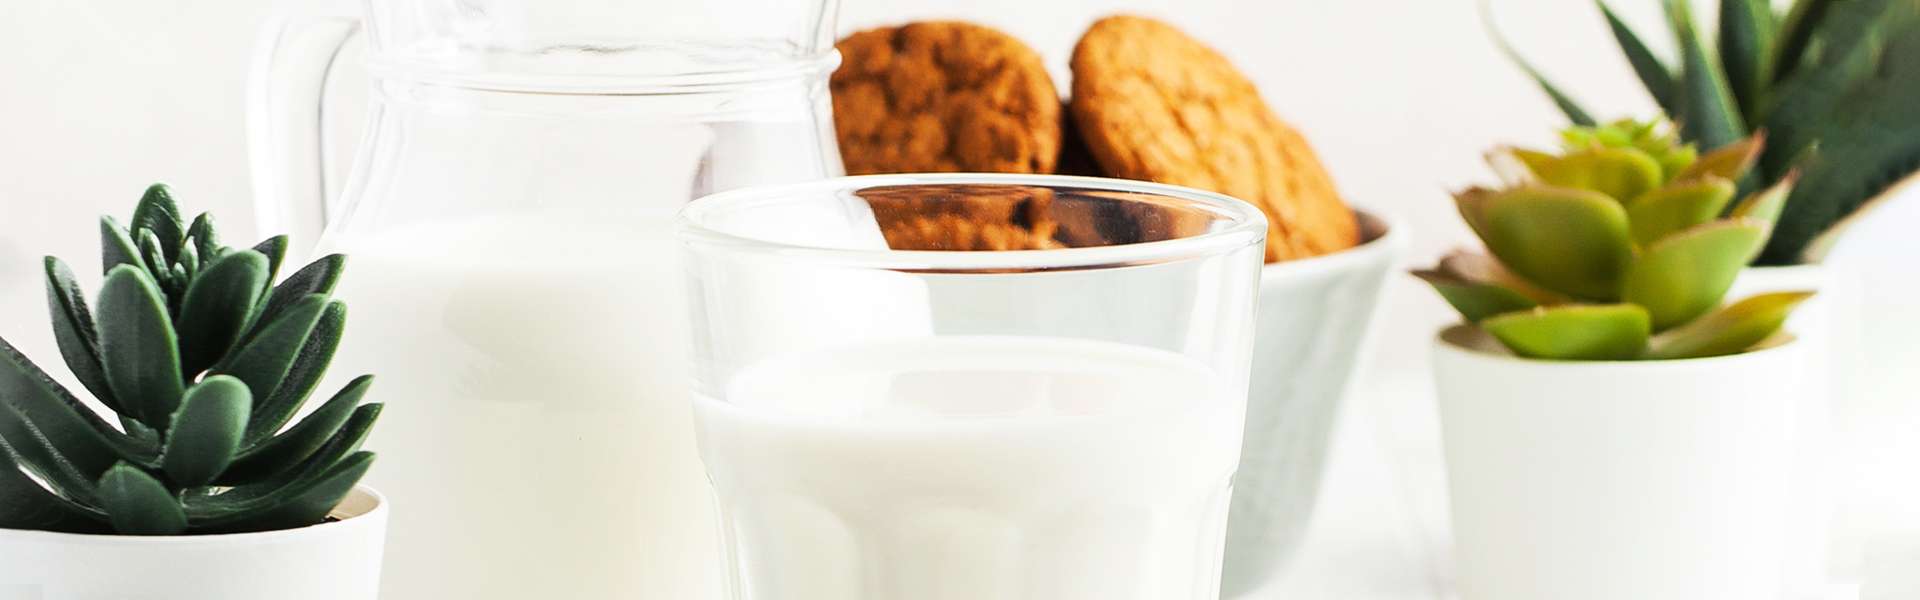 Latte si o latte no?